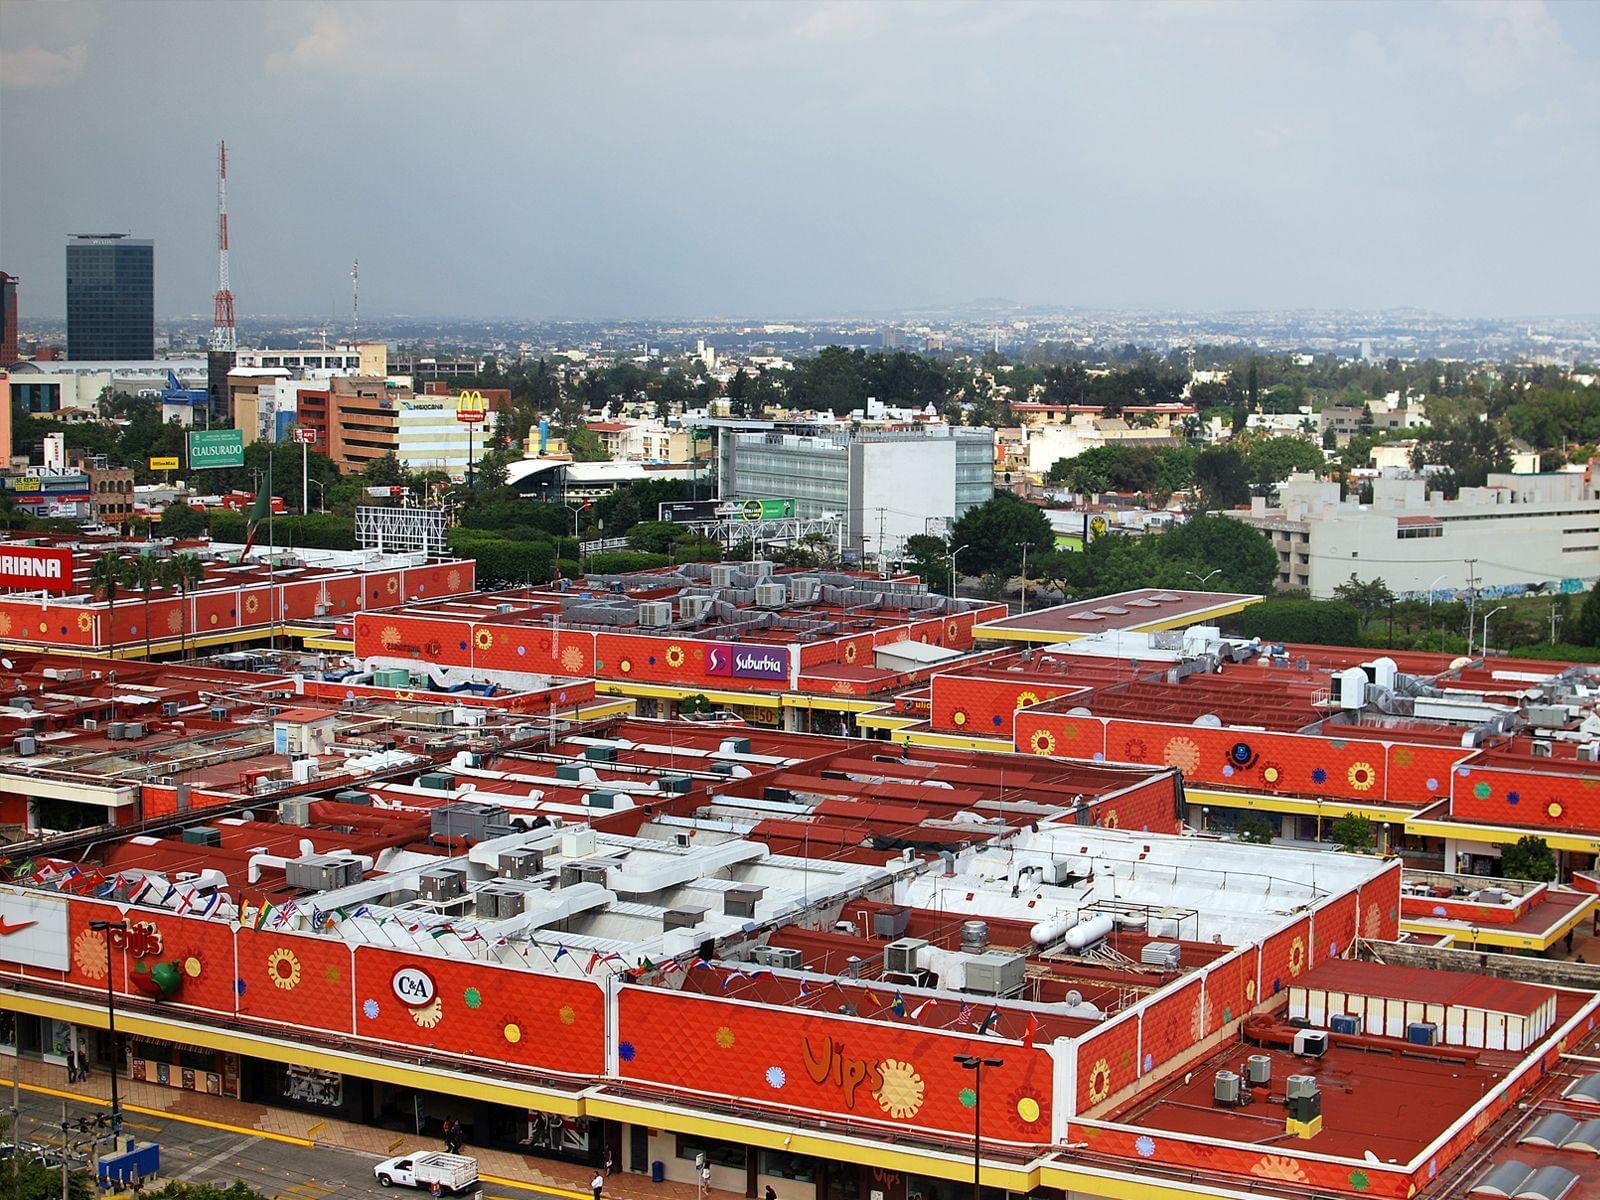 Aerial view of Plaza del Sol Shopping Mall at Hotel Guadalajara